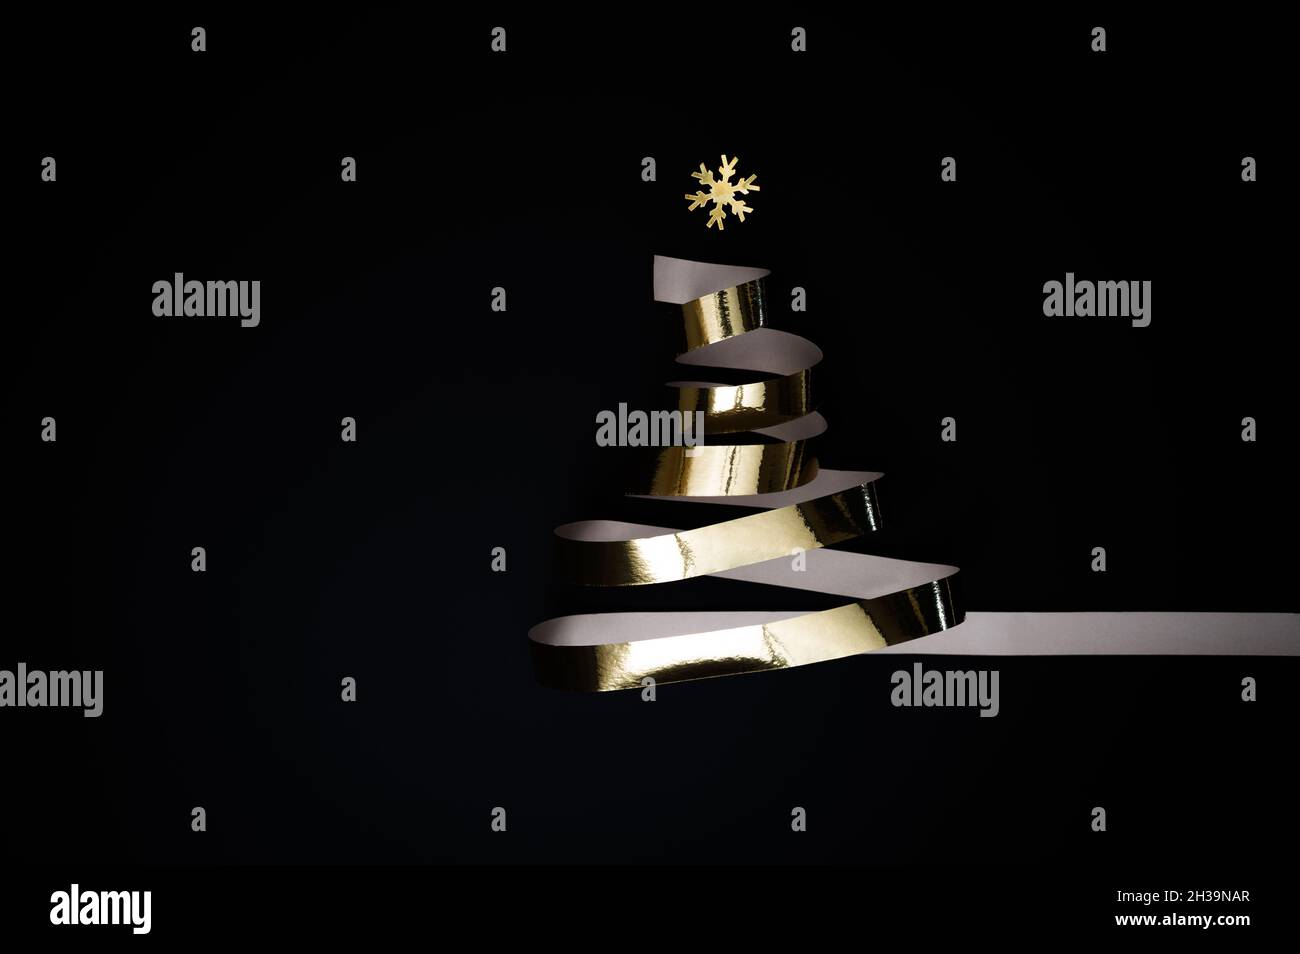 Festa di Natale o Capodanno concetto: Albero di Natale fatto di lucido nastro d'oro o streamer dorato su sfondo nero. Foto Stock